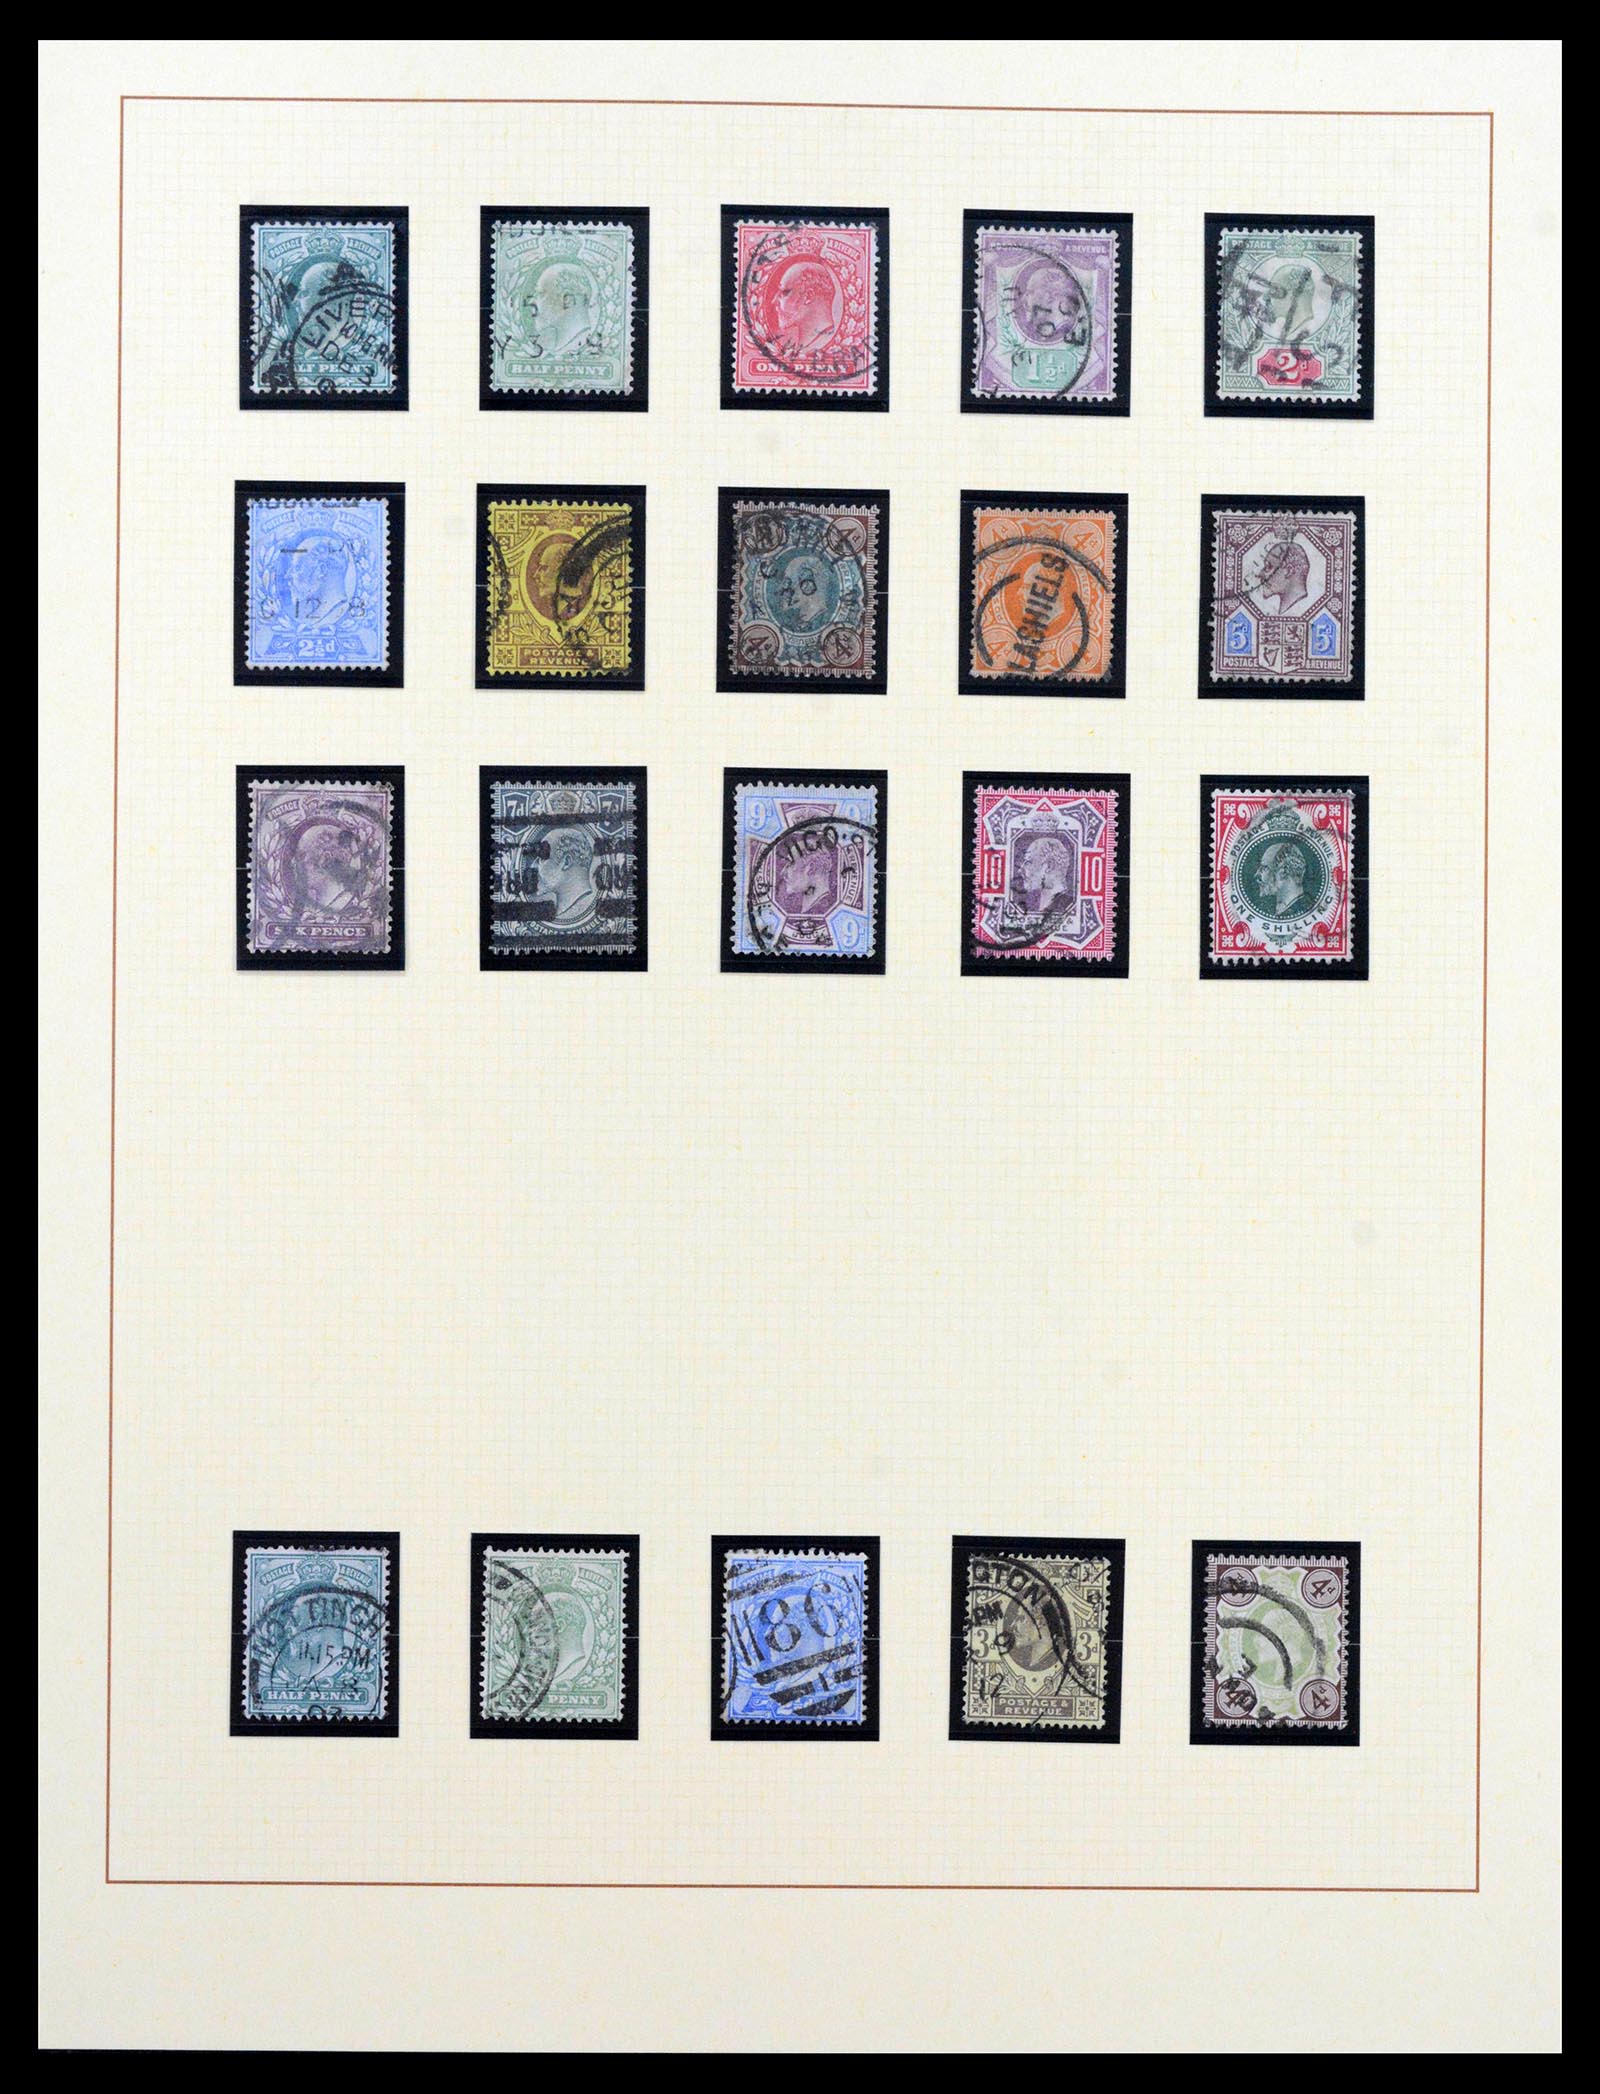 39375 0028 - Postzegelverzameling 39375 Engeland topverzameling 1840-1980.